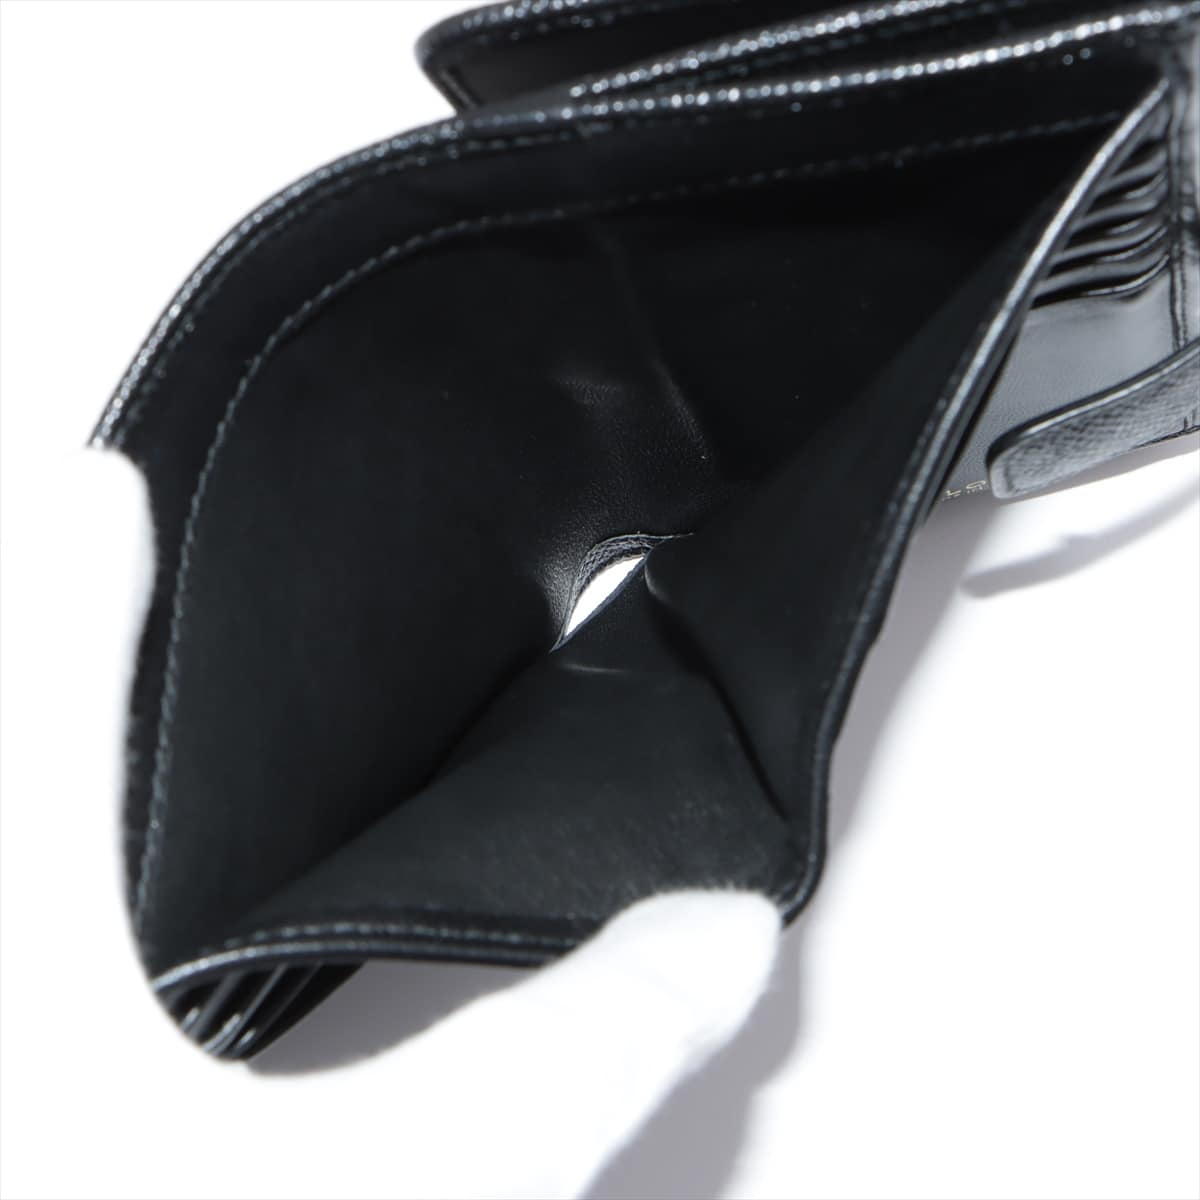 Bvlgari Bvlgari Bvlgari Leather Compact Wallet Black